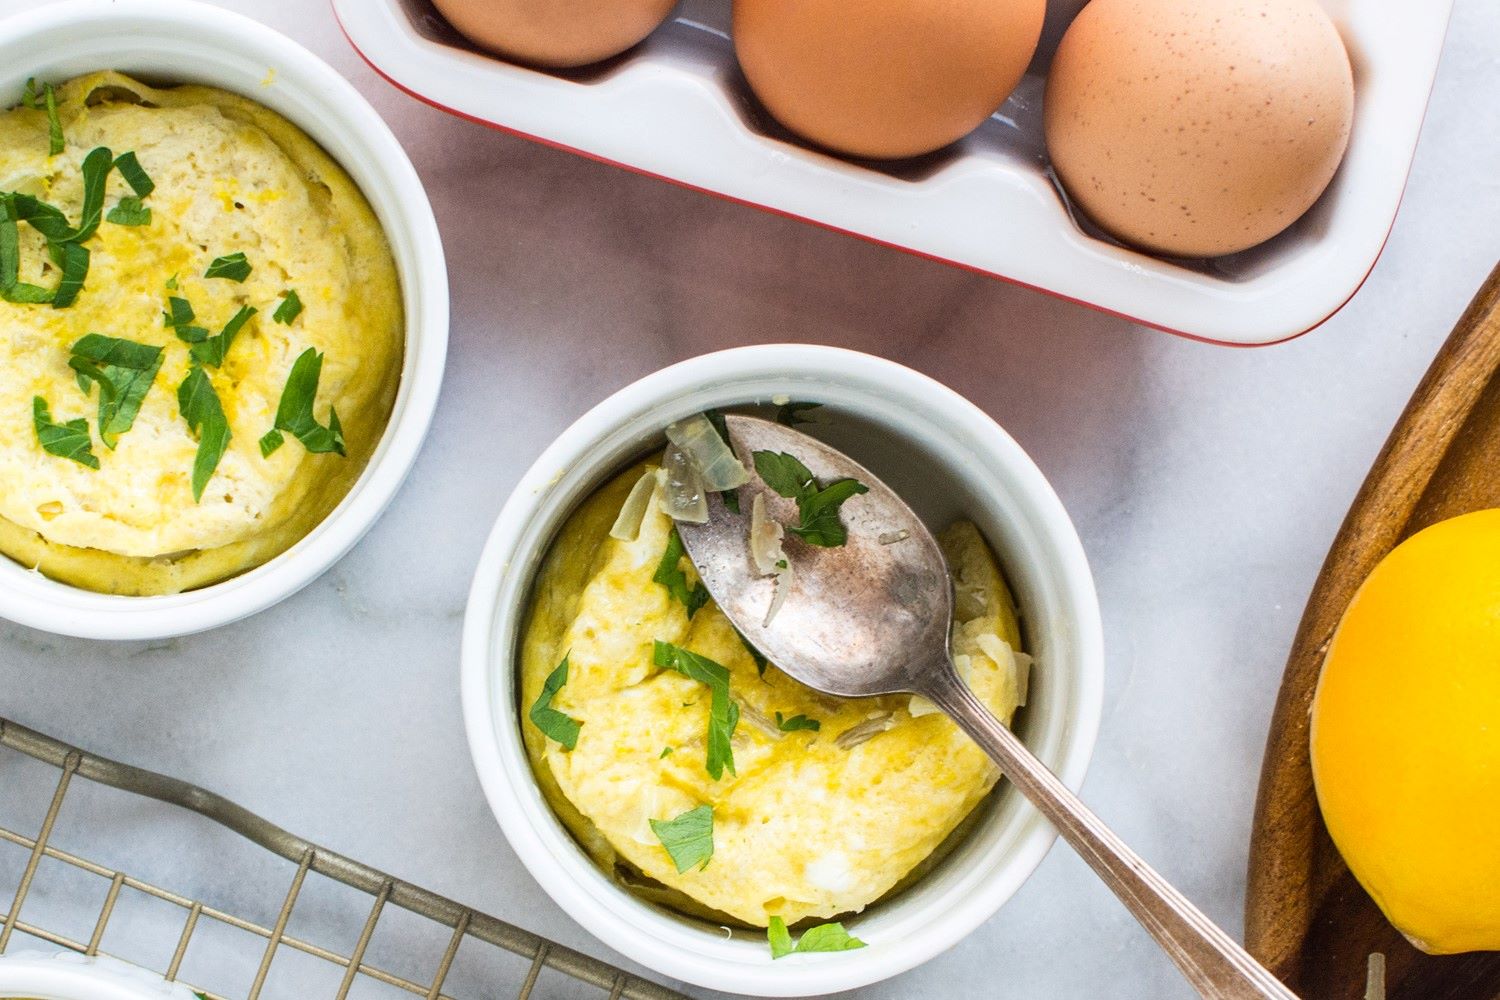 easy baked eggs recipes for breakfast